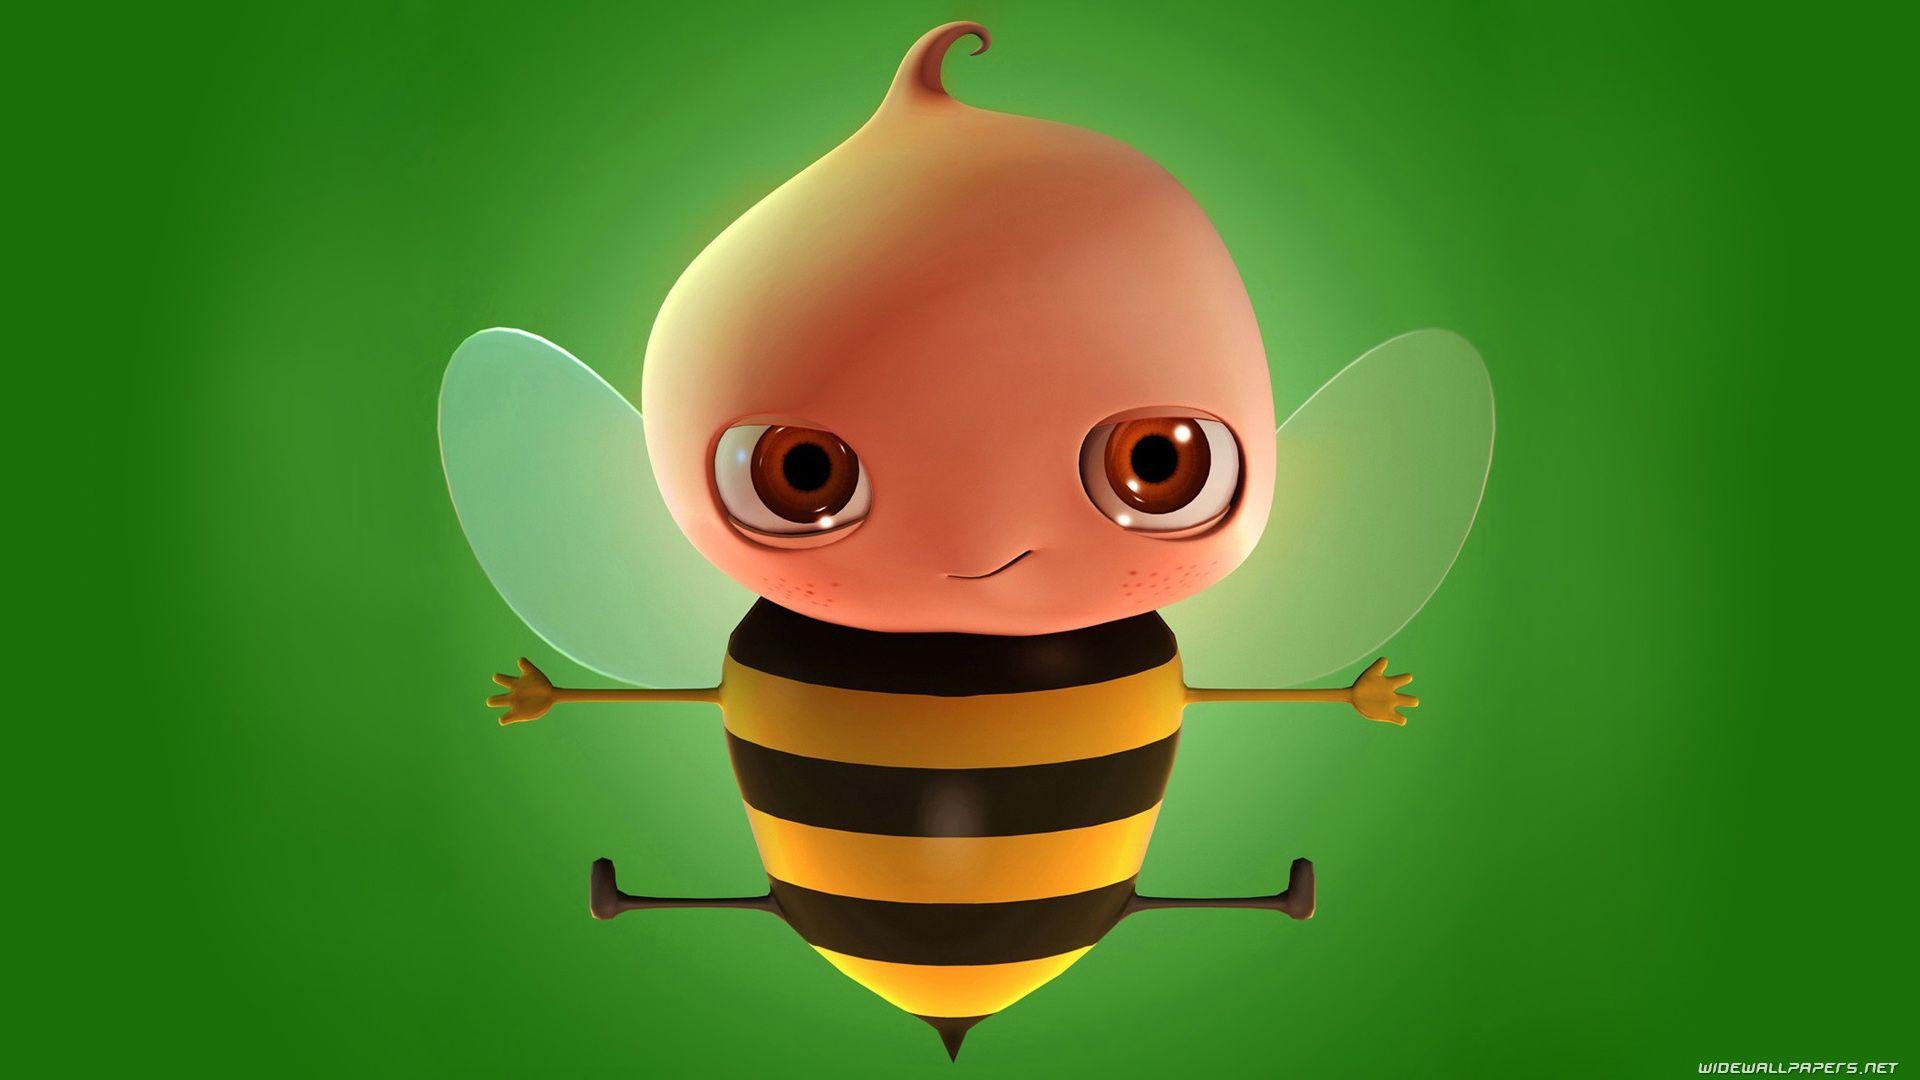 Cute Bee Desktop Wallpapers - Top Free Cute Bee Desktop Backgrounds